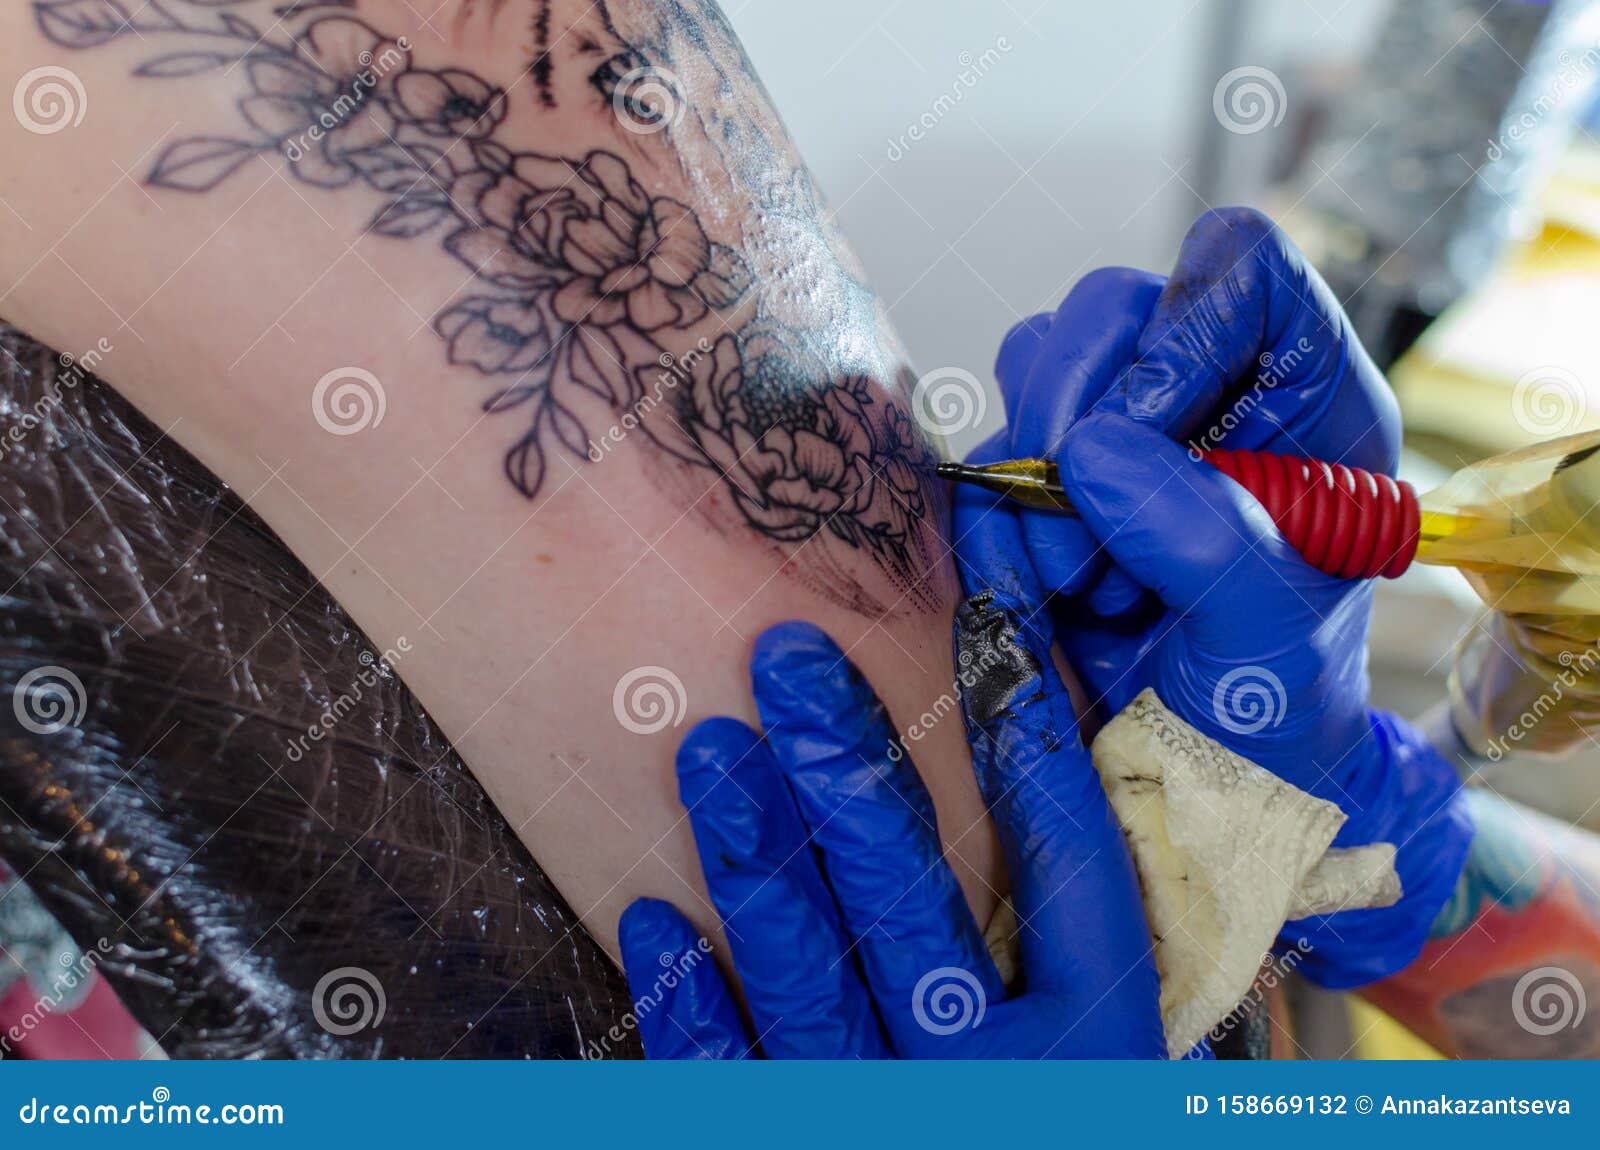 在女性上臂上制作花纹刺青的方法特写 选择性聚焦图库摄影片 图片包括有特写 选择性聚焦 在女性上臂上制作花纹刺青的方法